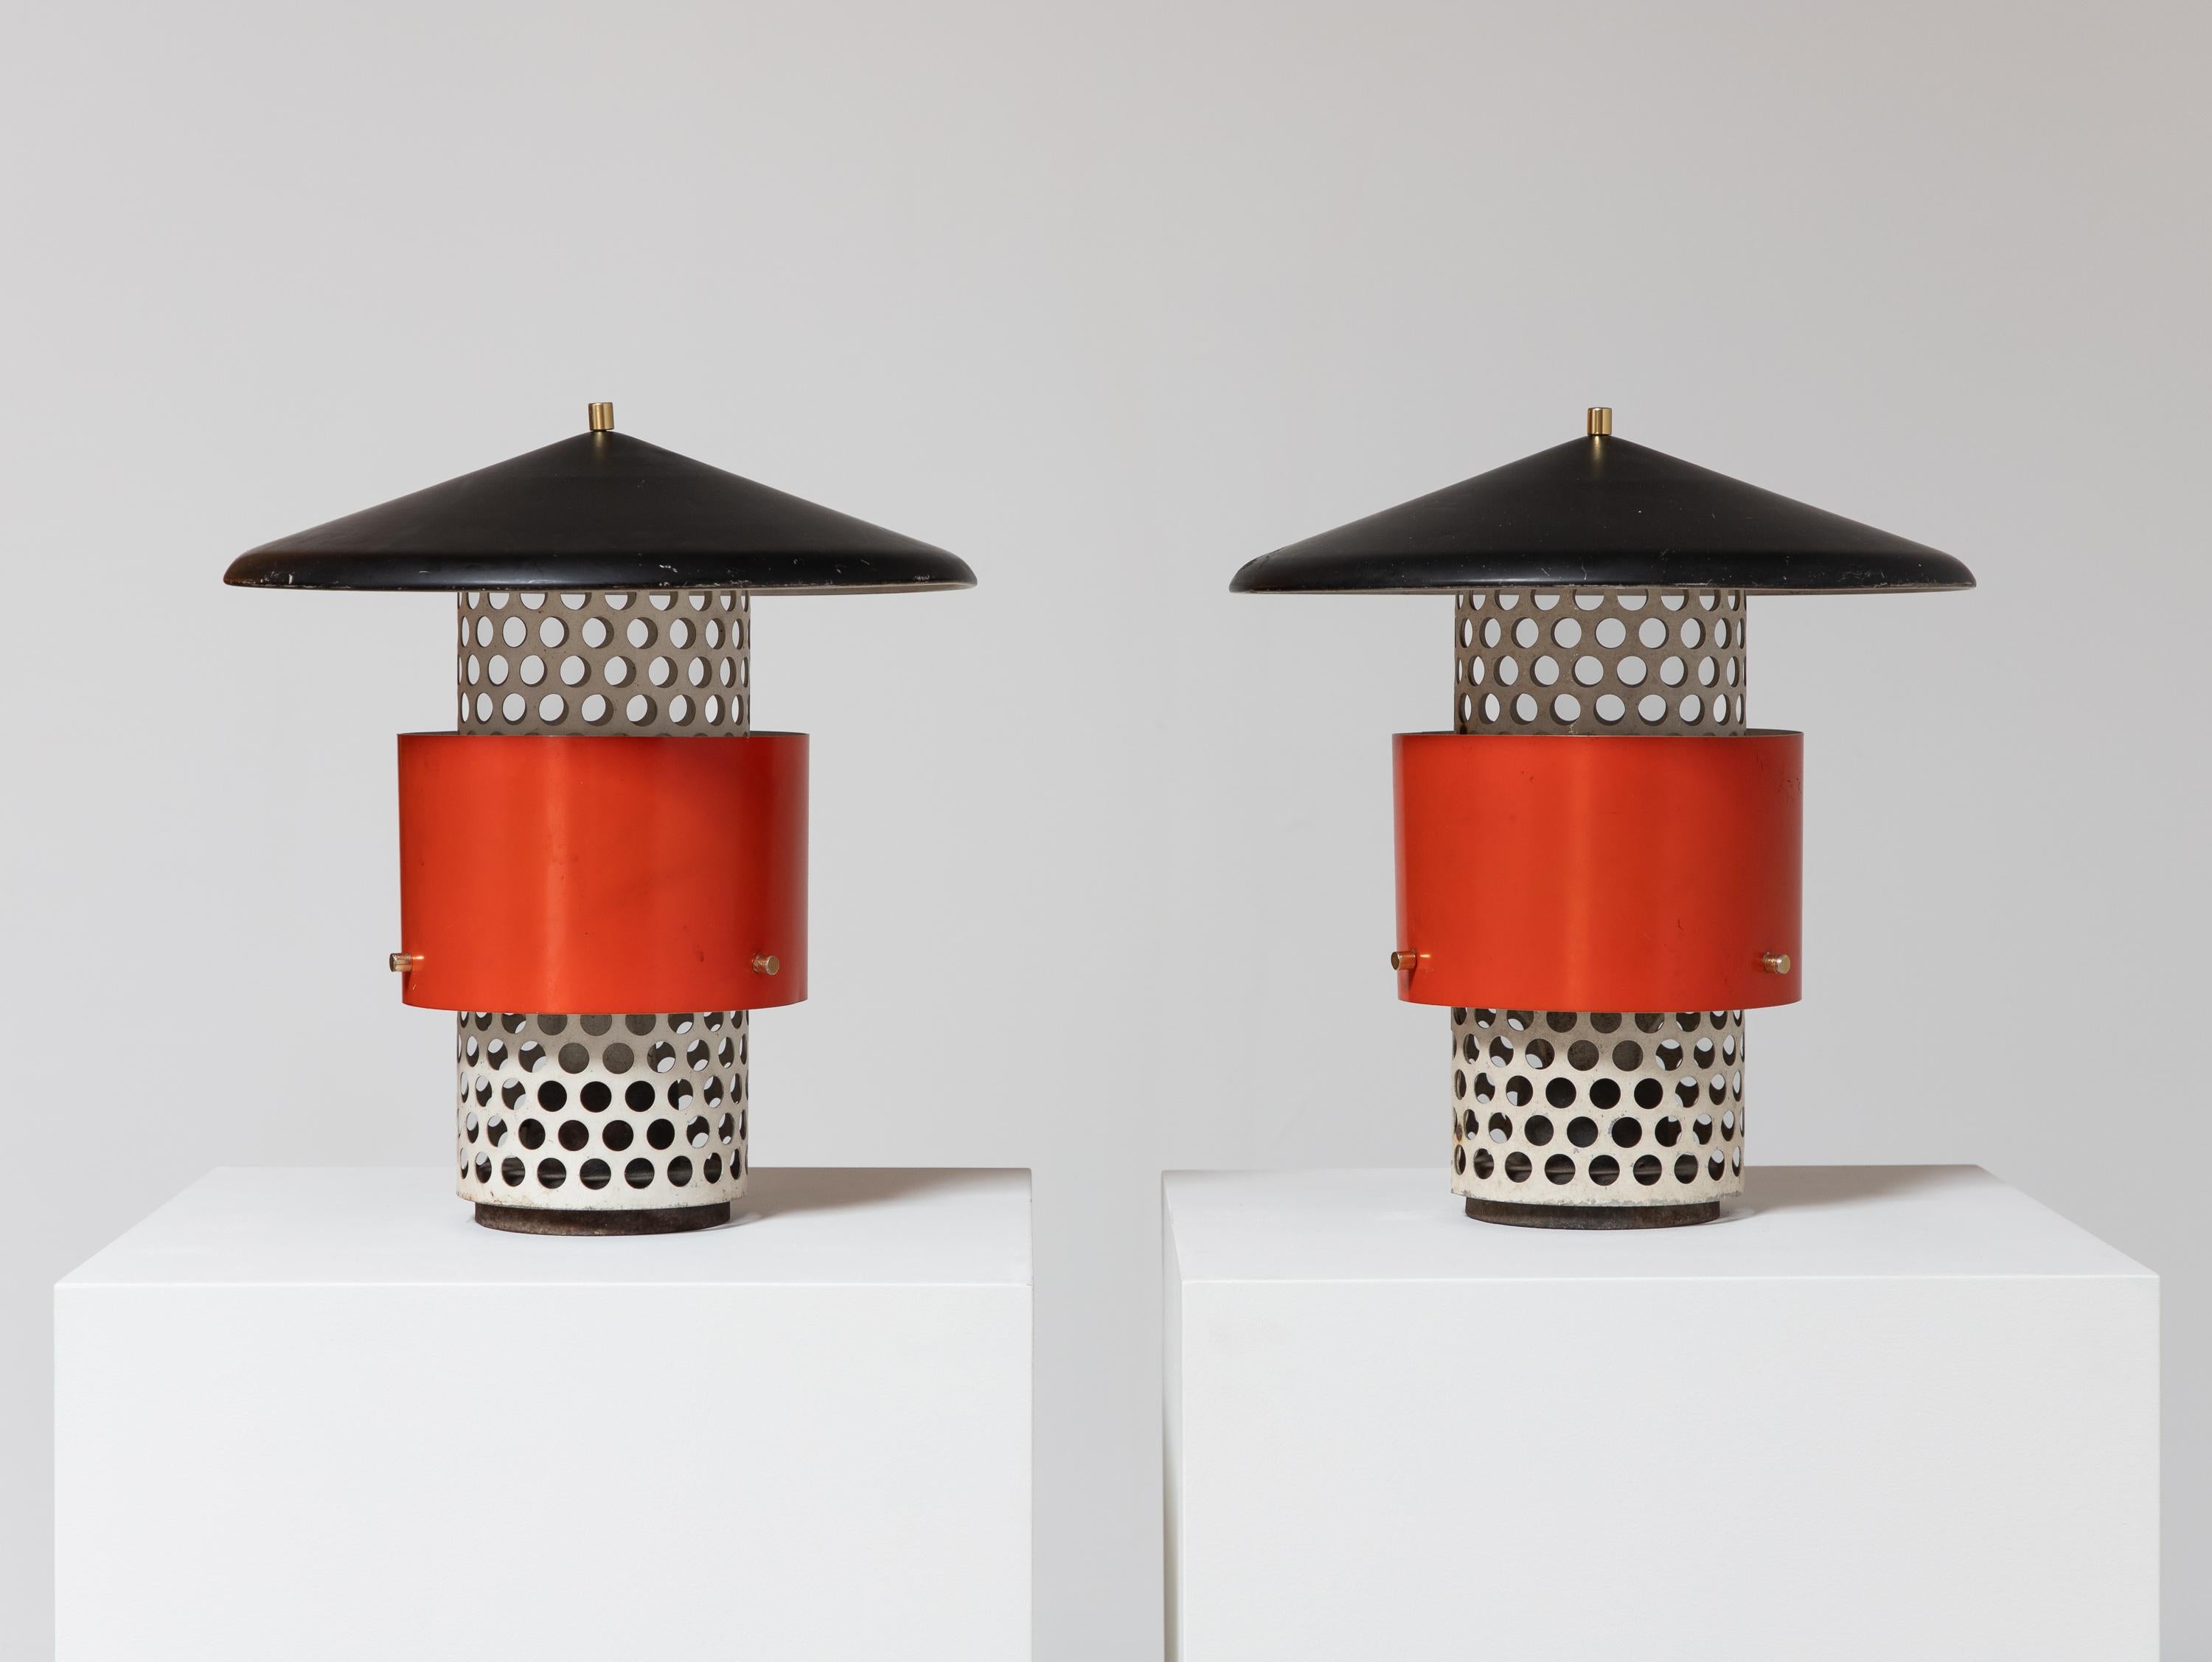 Ein seltenes Paar Lytescape-Außenlampen, die oft Gino Sarfratti zugeschrieben werden und von Lightolier hergestellt wurden.  Diese Vintage-Lampen haben einen perforierten Metallsockel mit einem leuchtenden zinnoberroten Schirm, der mit